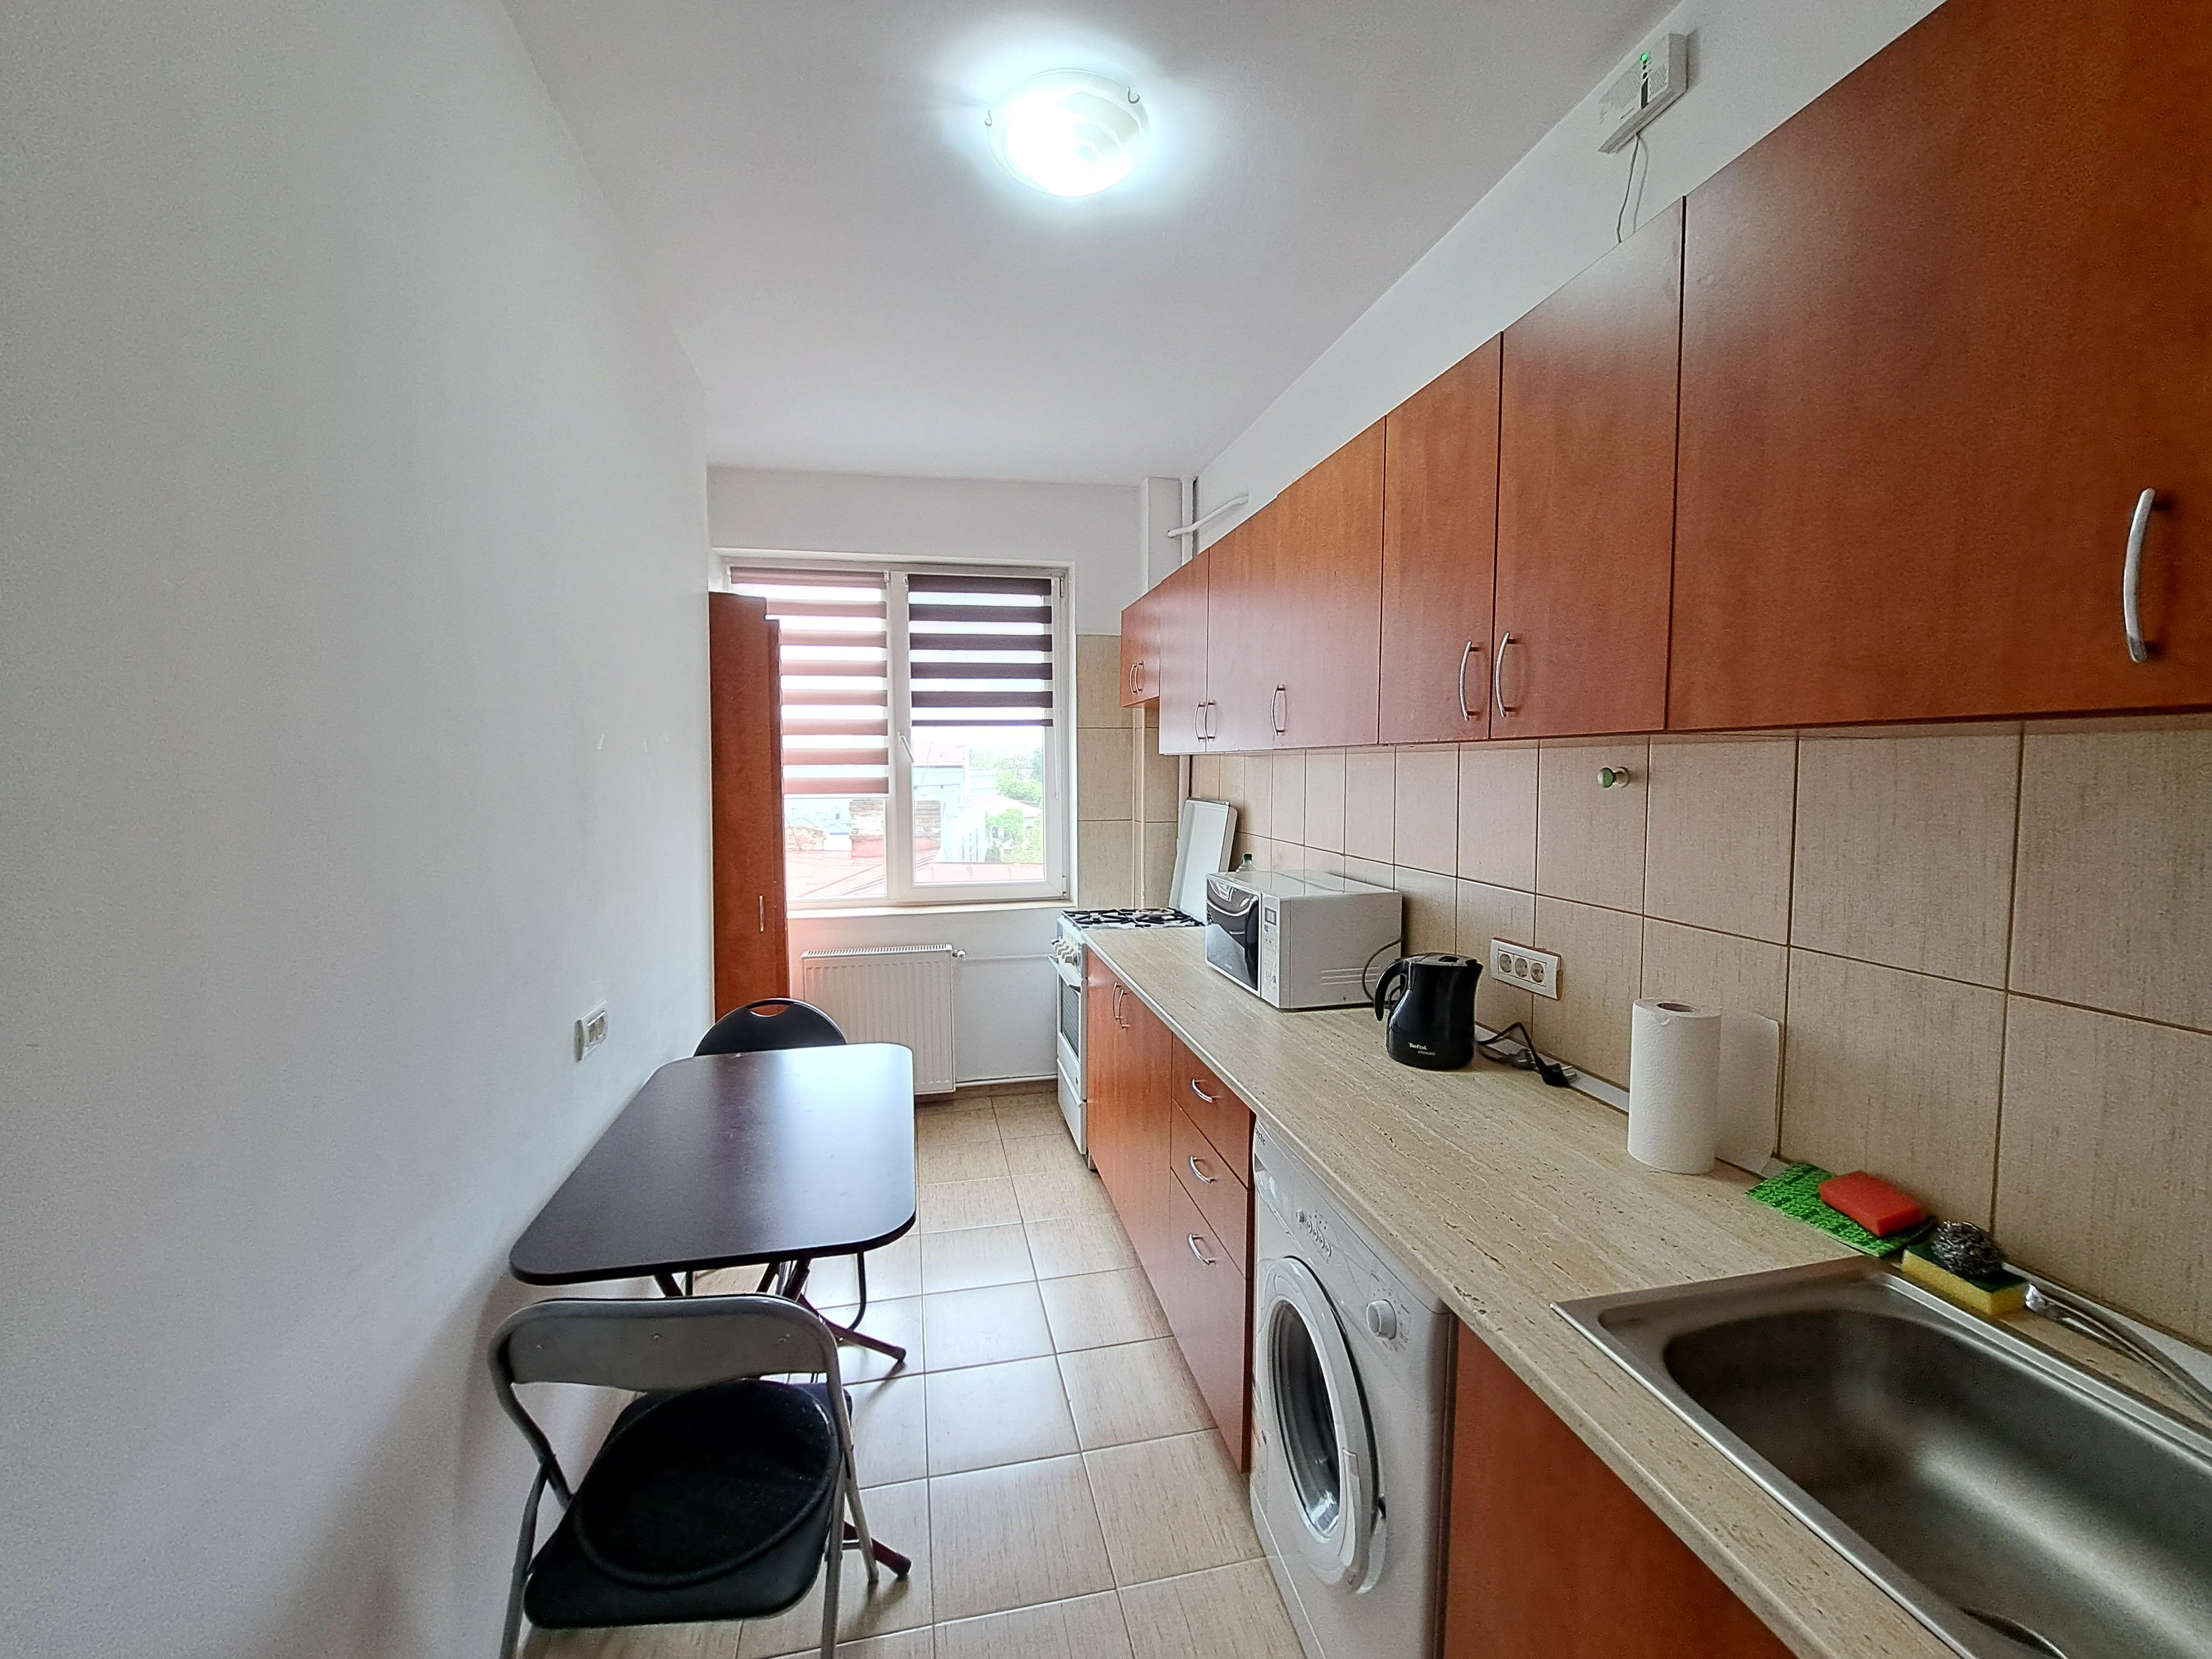 Apartament cu 2 camere 55,54 mp in zona Romana